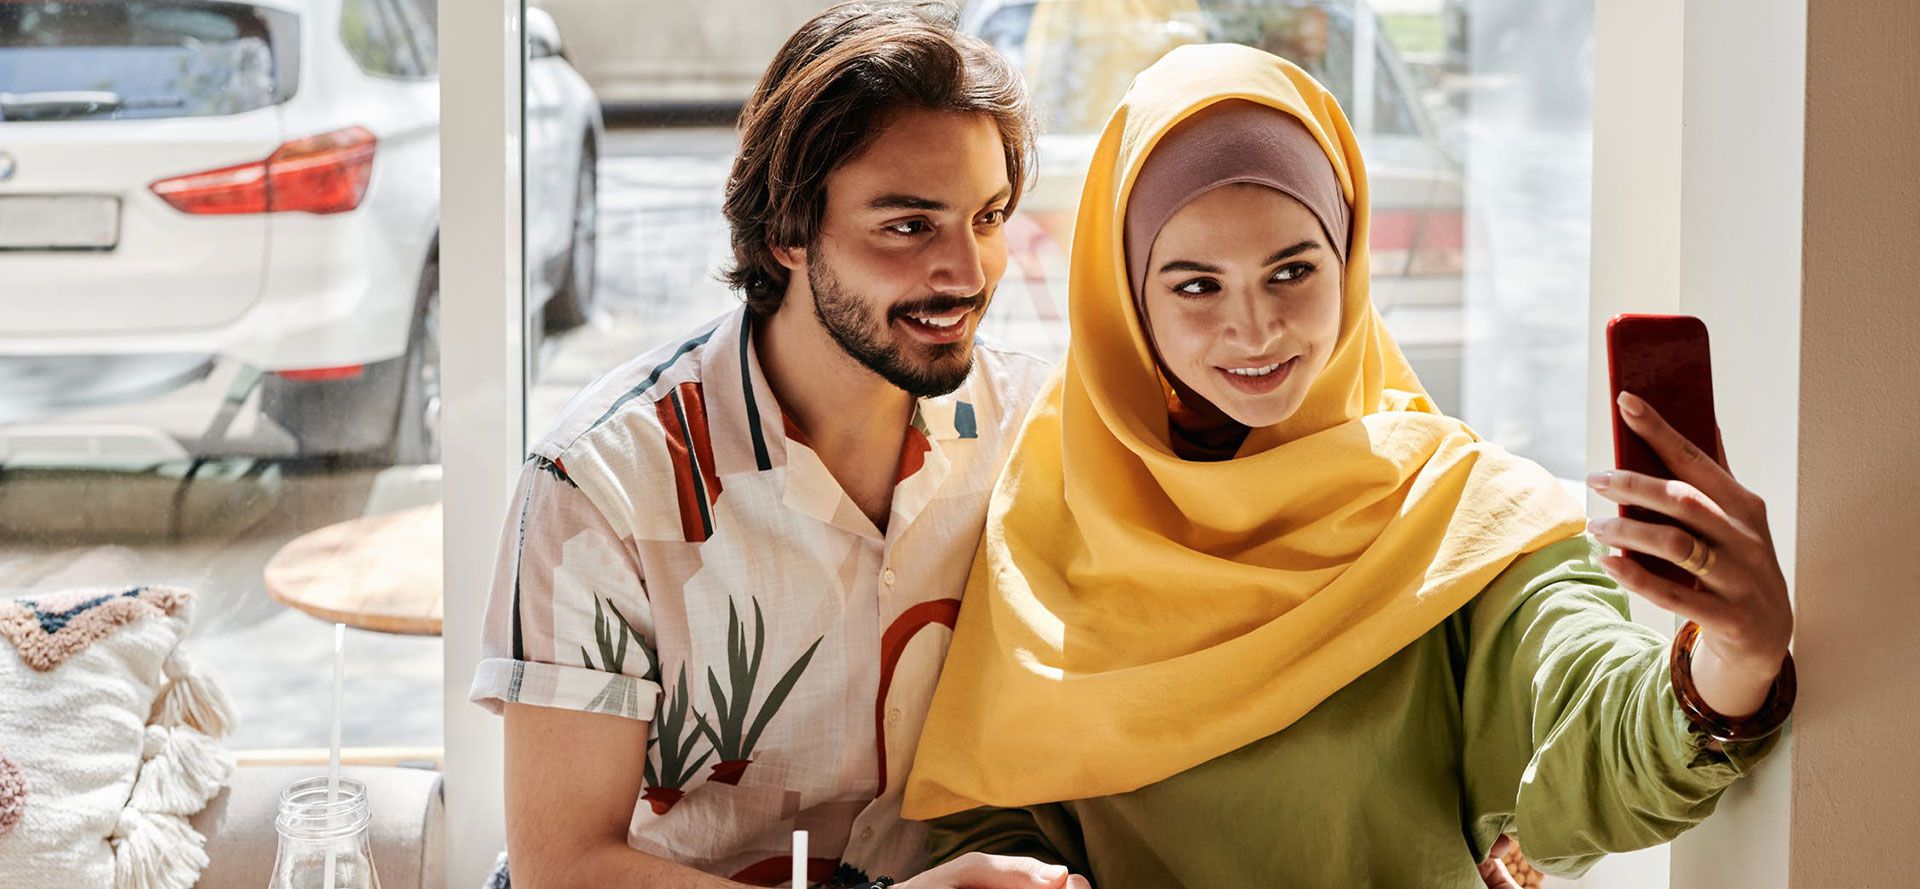 En muslimsk kvinna tar en selfie med sin pojkvän.